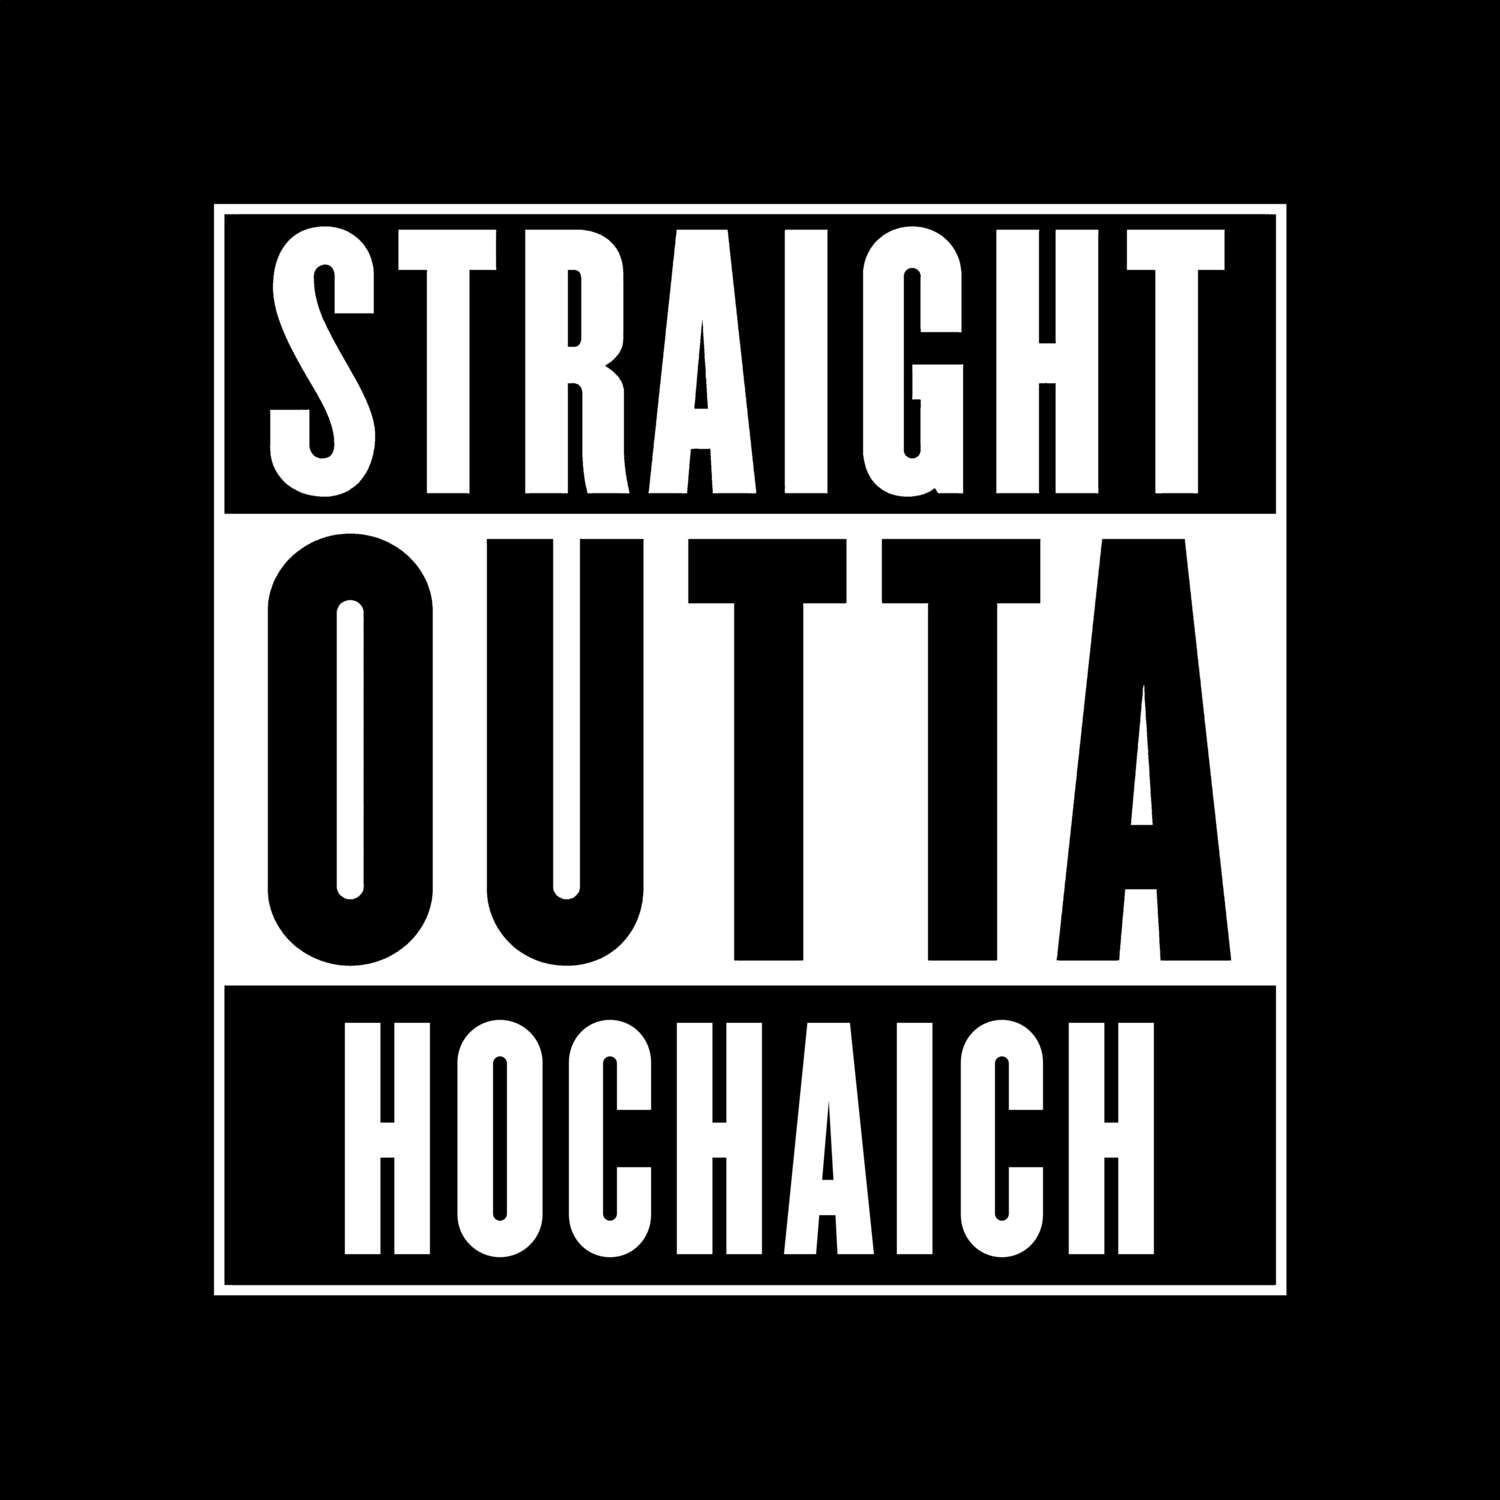 Hochaich T-Shirt »Straight Outta«